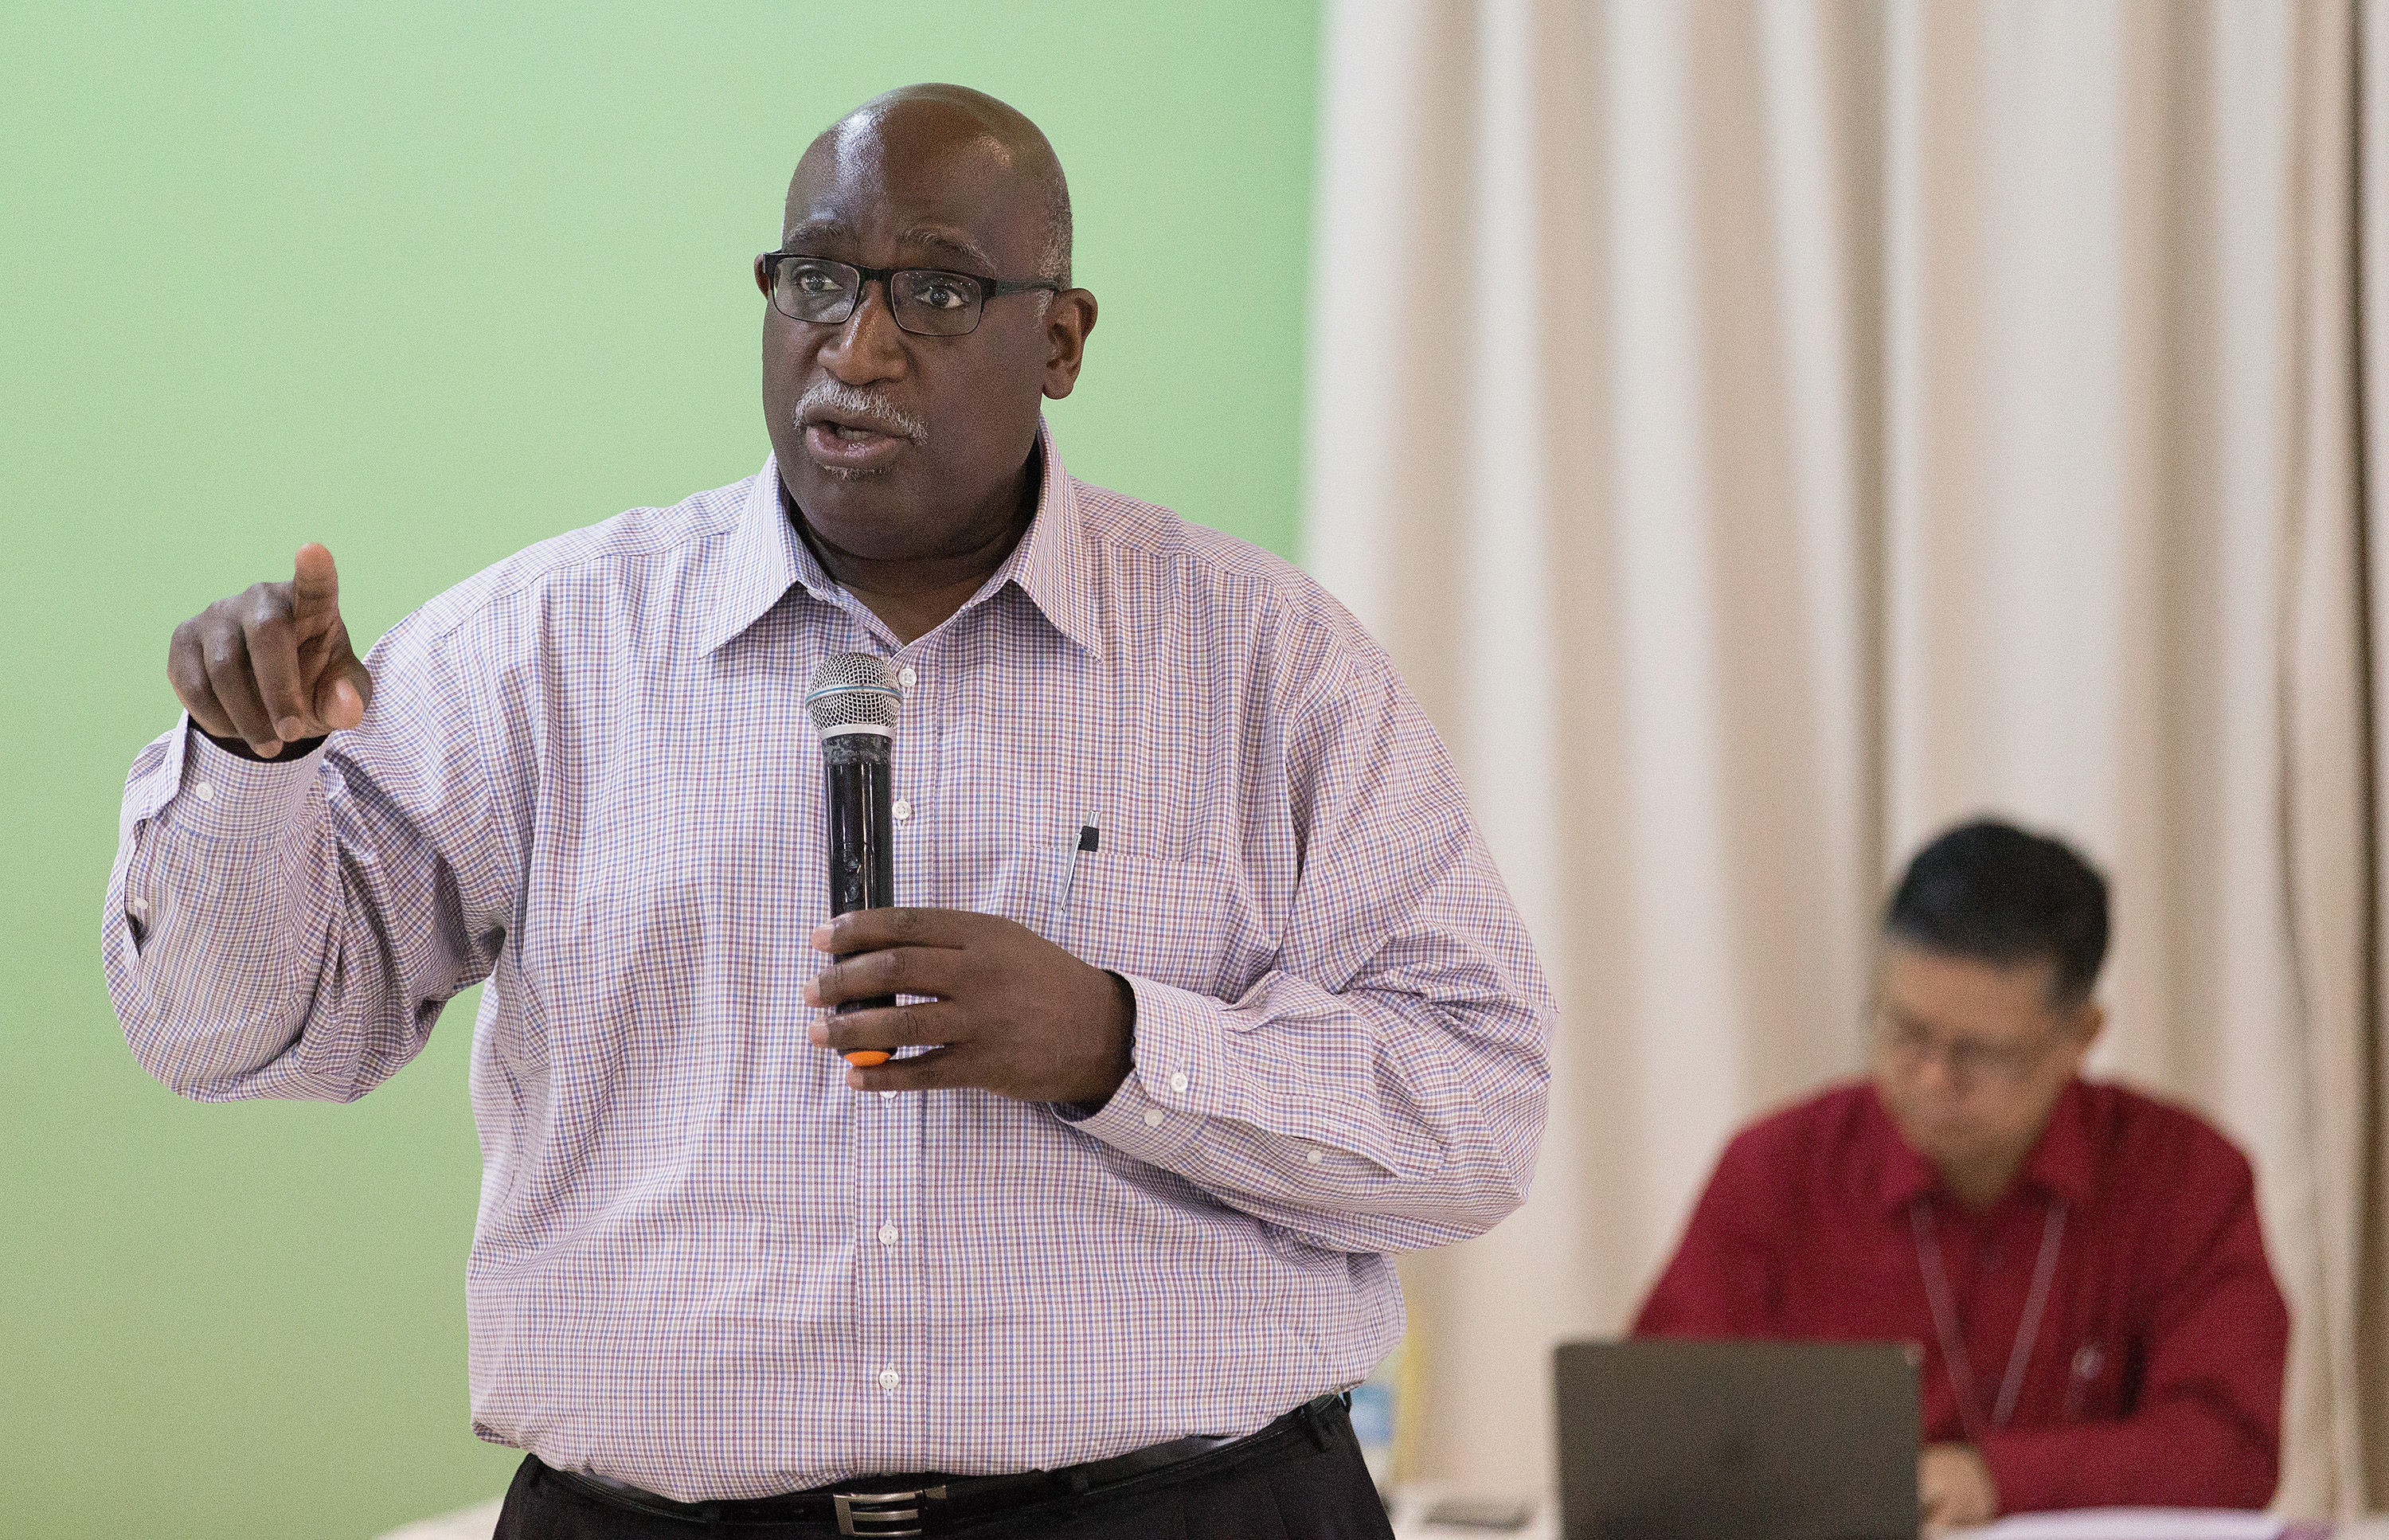 O Bispo Gregory Palmer faz uma apresentação durante a reunião do Comitê Permanente Metodista Unido sobre Assuntos da Conferência Central em Abidjan, Costa do Marfim, em fevereiro de 2018. - Foto de arquivo por Mike DuBose, SMUN.